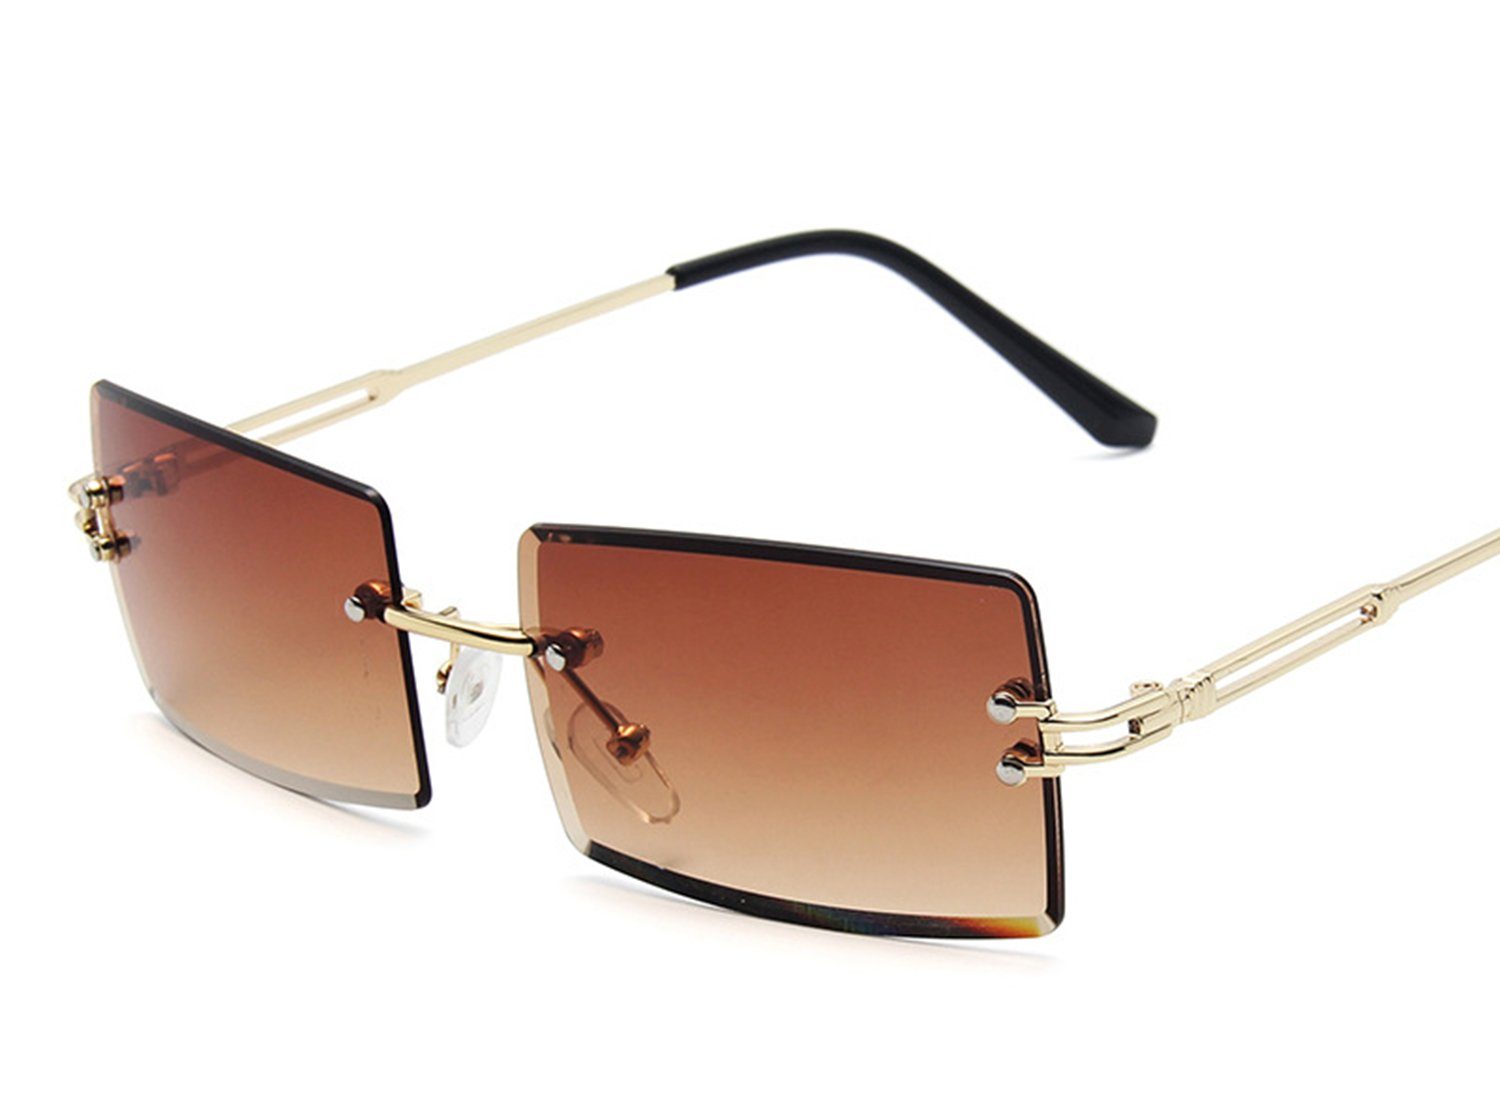 Haiaveng Sonnenbrille Rechteckige Randlose Sonnenbrille Unisex Ultra-Small Retro Brille Durchsichtige Linse für Damen Herren brown